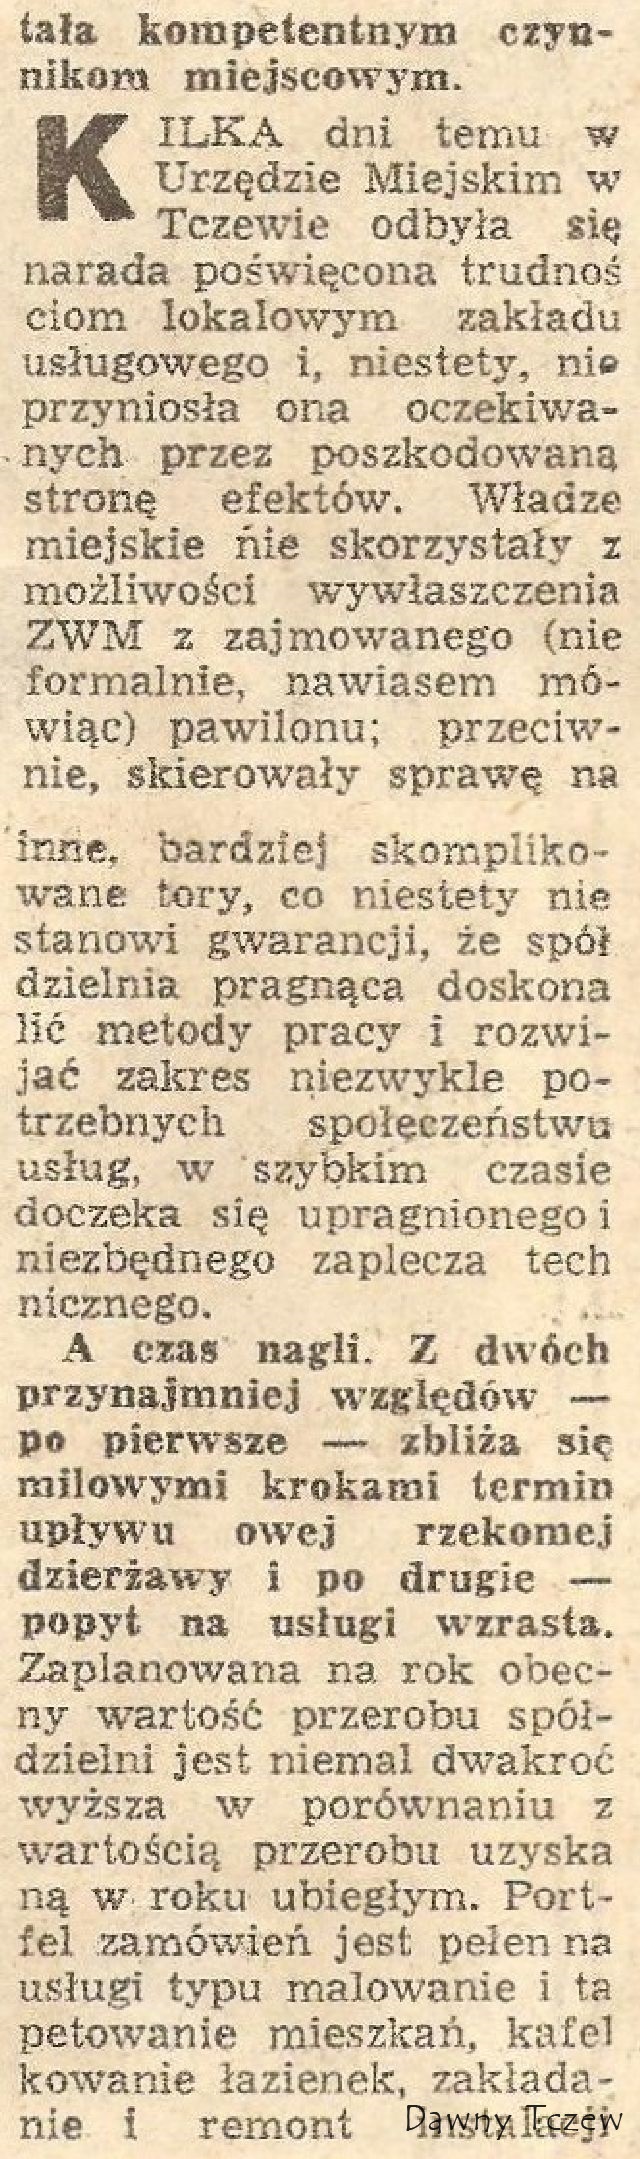 Dziennik Bałtycki, 26.05.1977 r. c.d...jpg